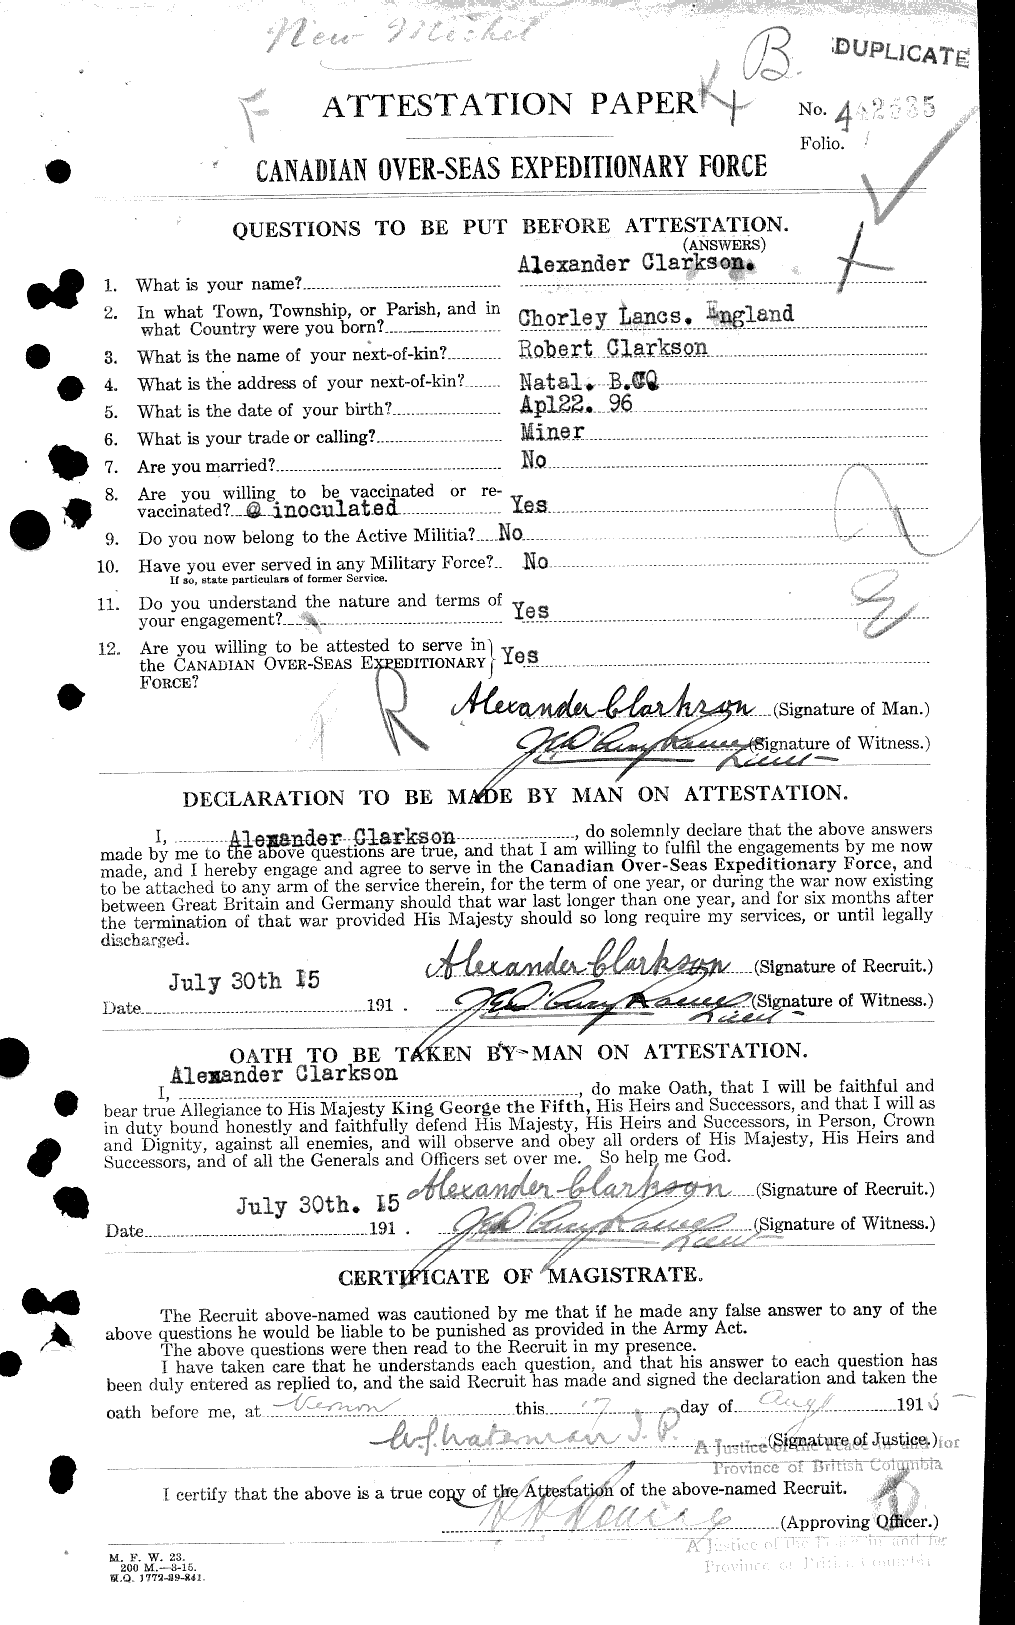 Dossiers du Personnel de la Première Guerre mondiale - CEC 023611a